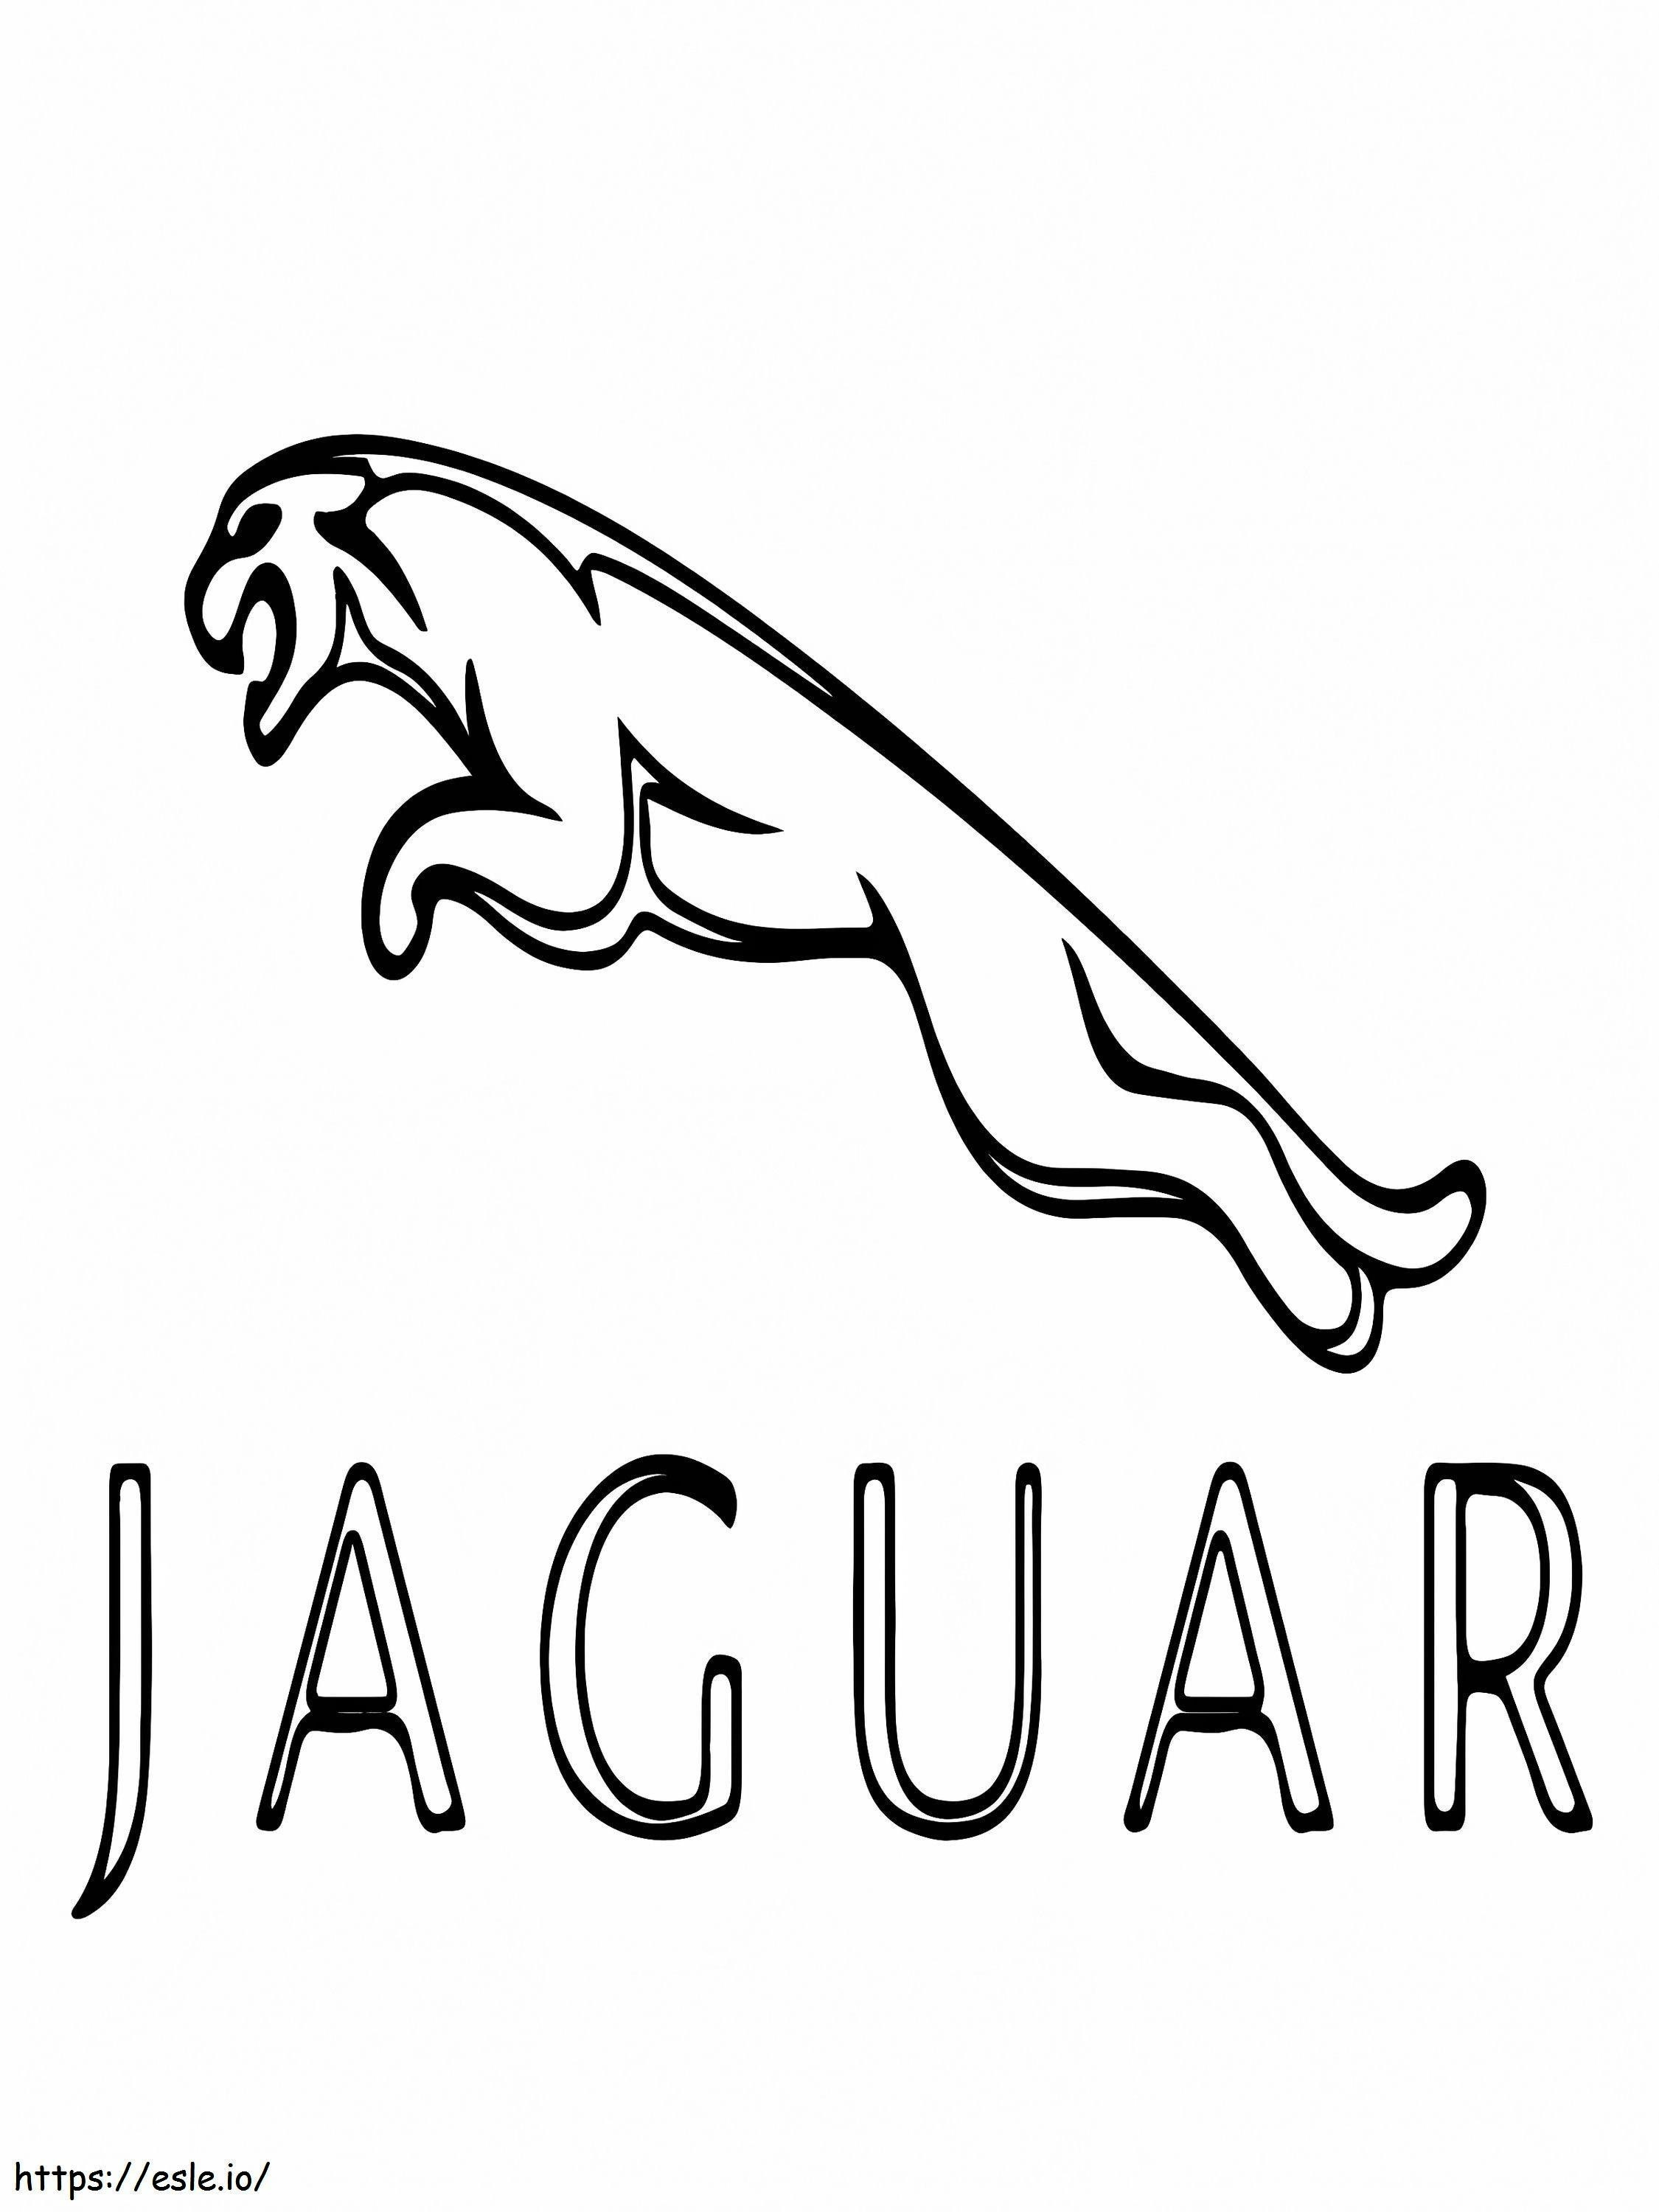 Logo samochodu Jaguar kolorowanka